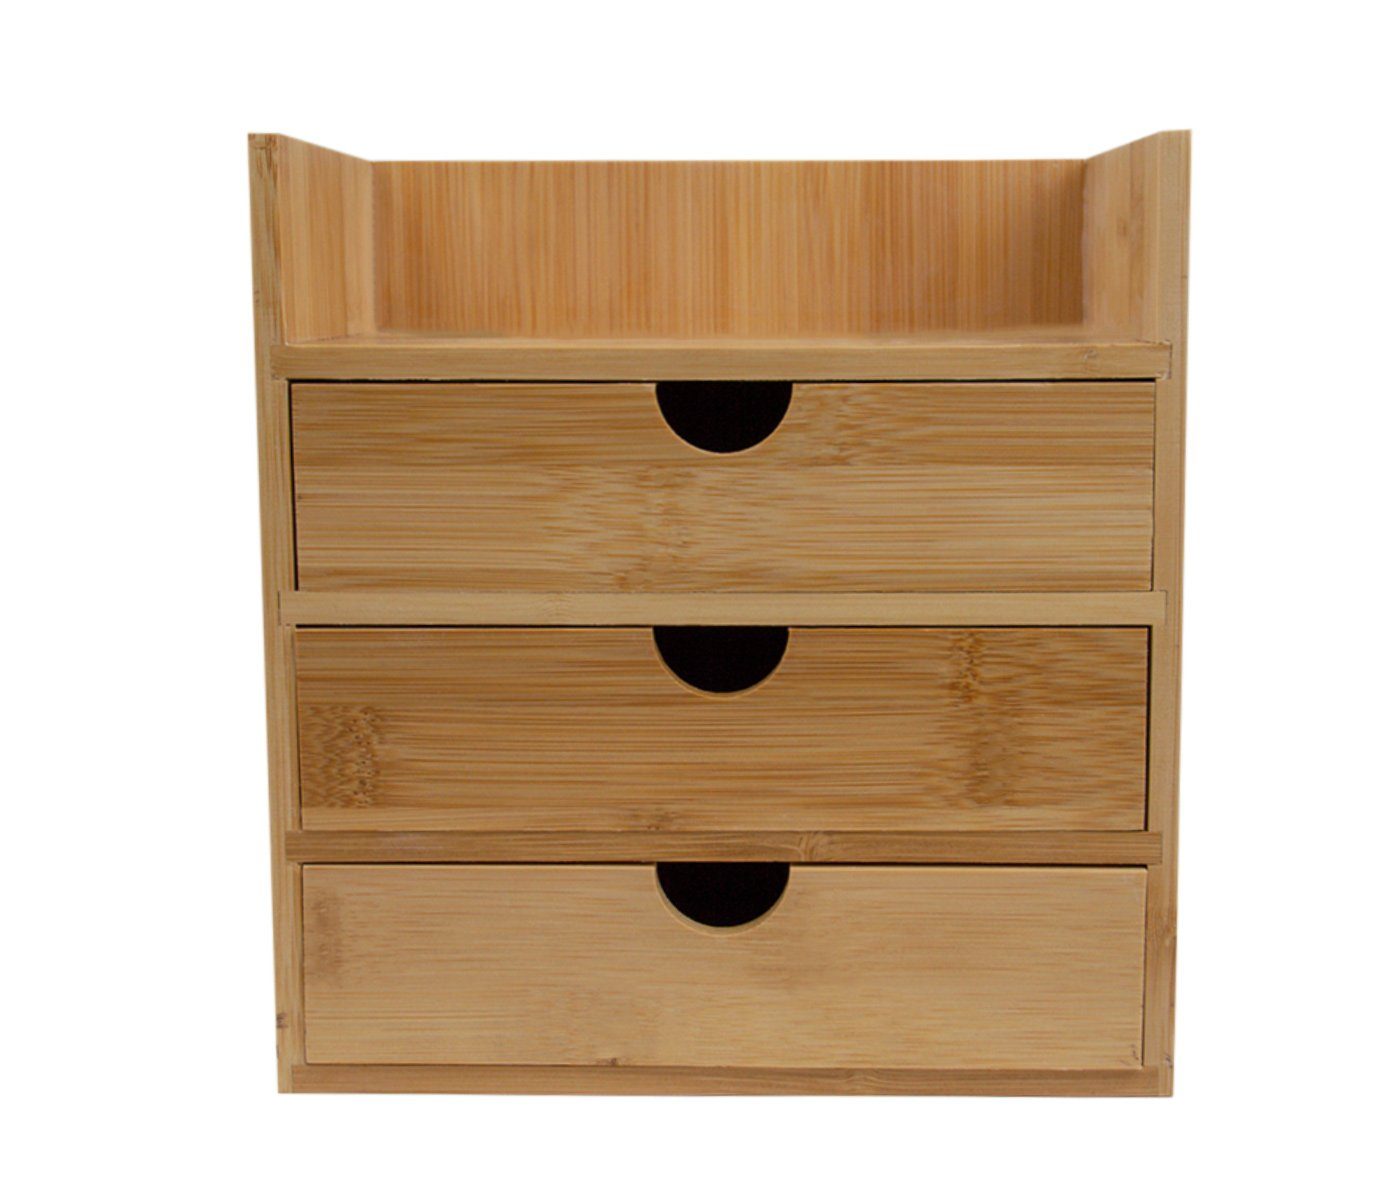 Alsino Kiste Mini Schrank aus Bambus 21 cm x 13 cm x 20 cm herausnehmbar  Standregal Holz Kommode Büroschrank Schreibtisch Organizer Vintage-Look 3  Schubladen